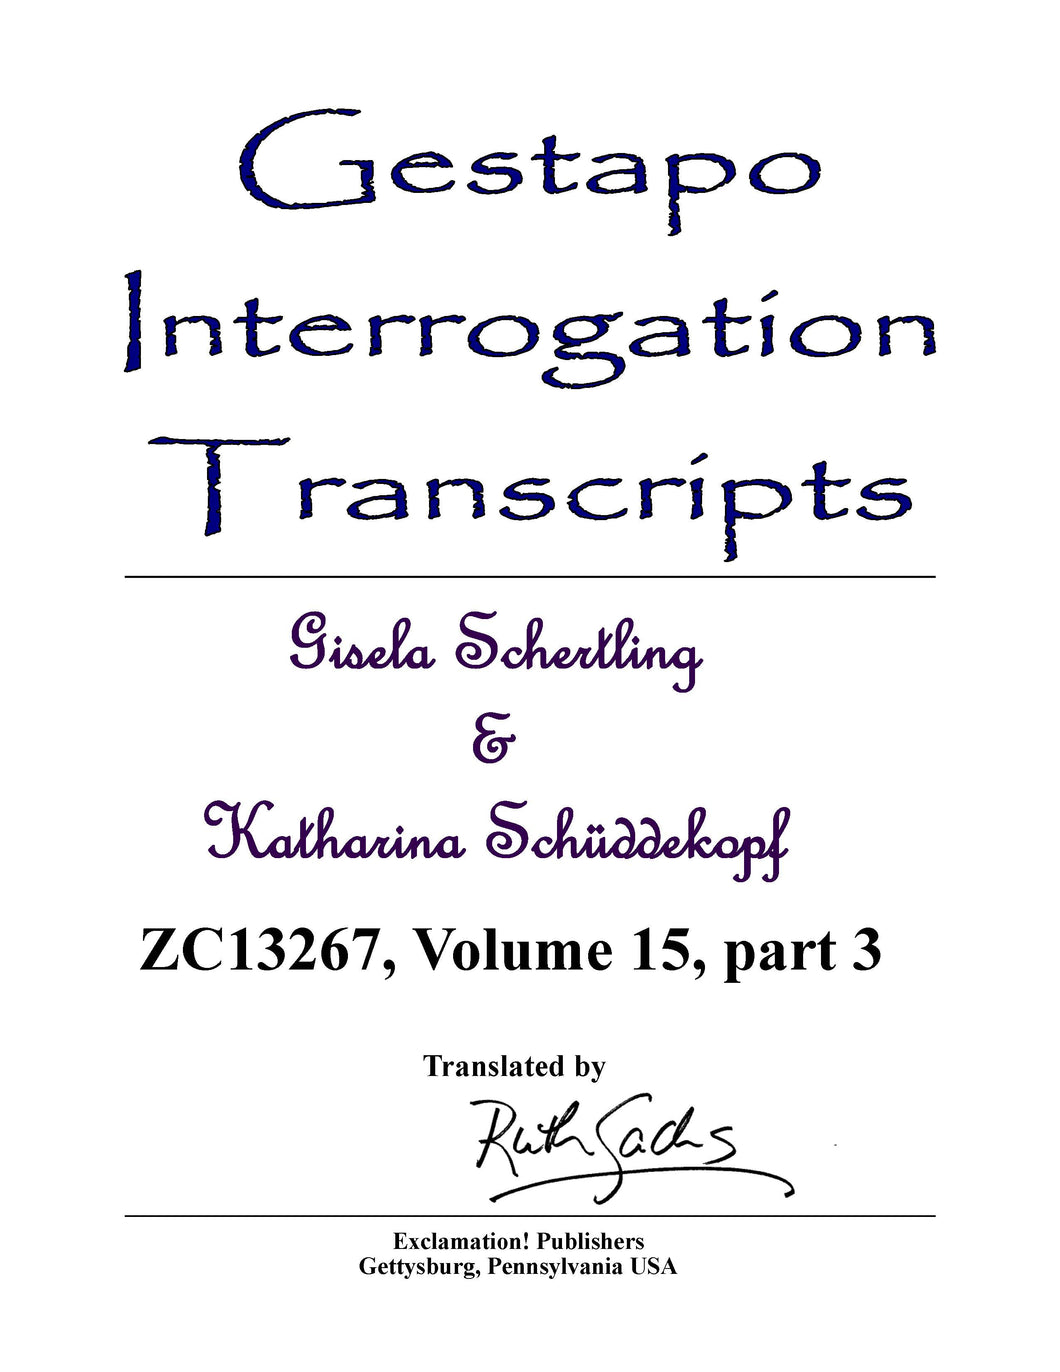 Gestapo Interrogation Transcripts: Schertling and Schüddekopf. ZC13267 Vol. 15, Part 3